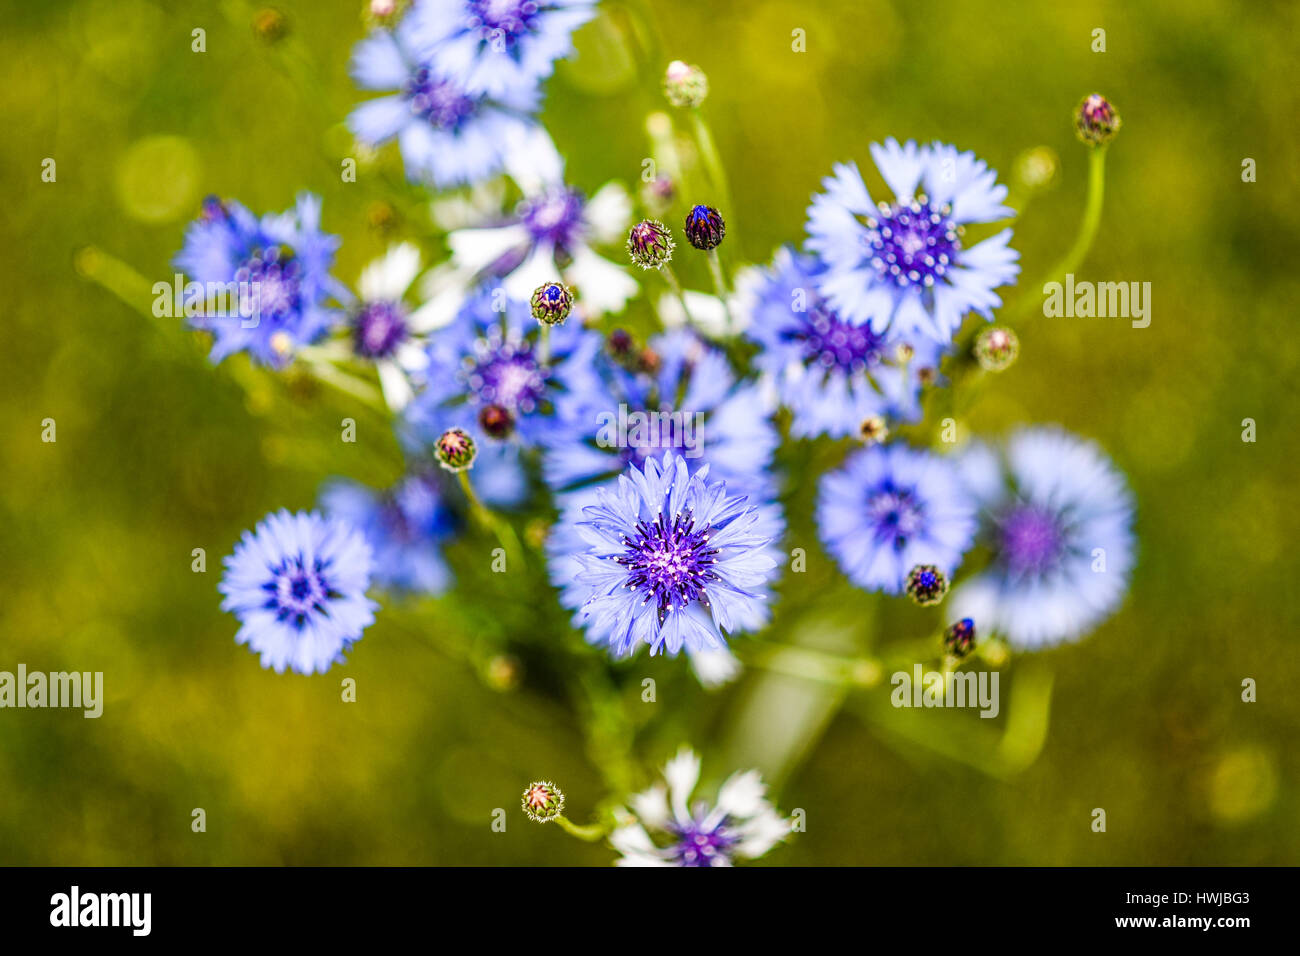 Blue cornflower in garden Stock Photo